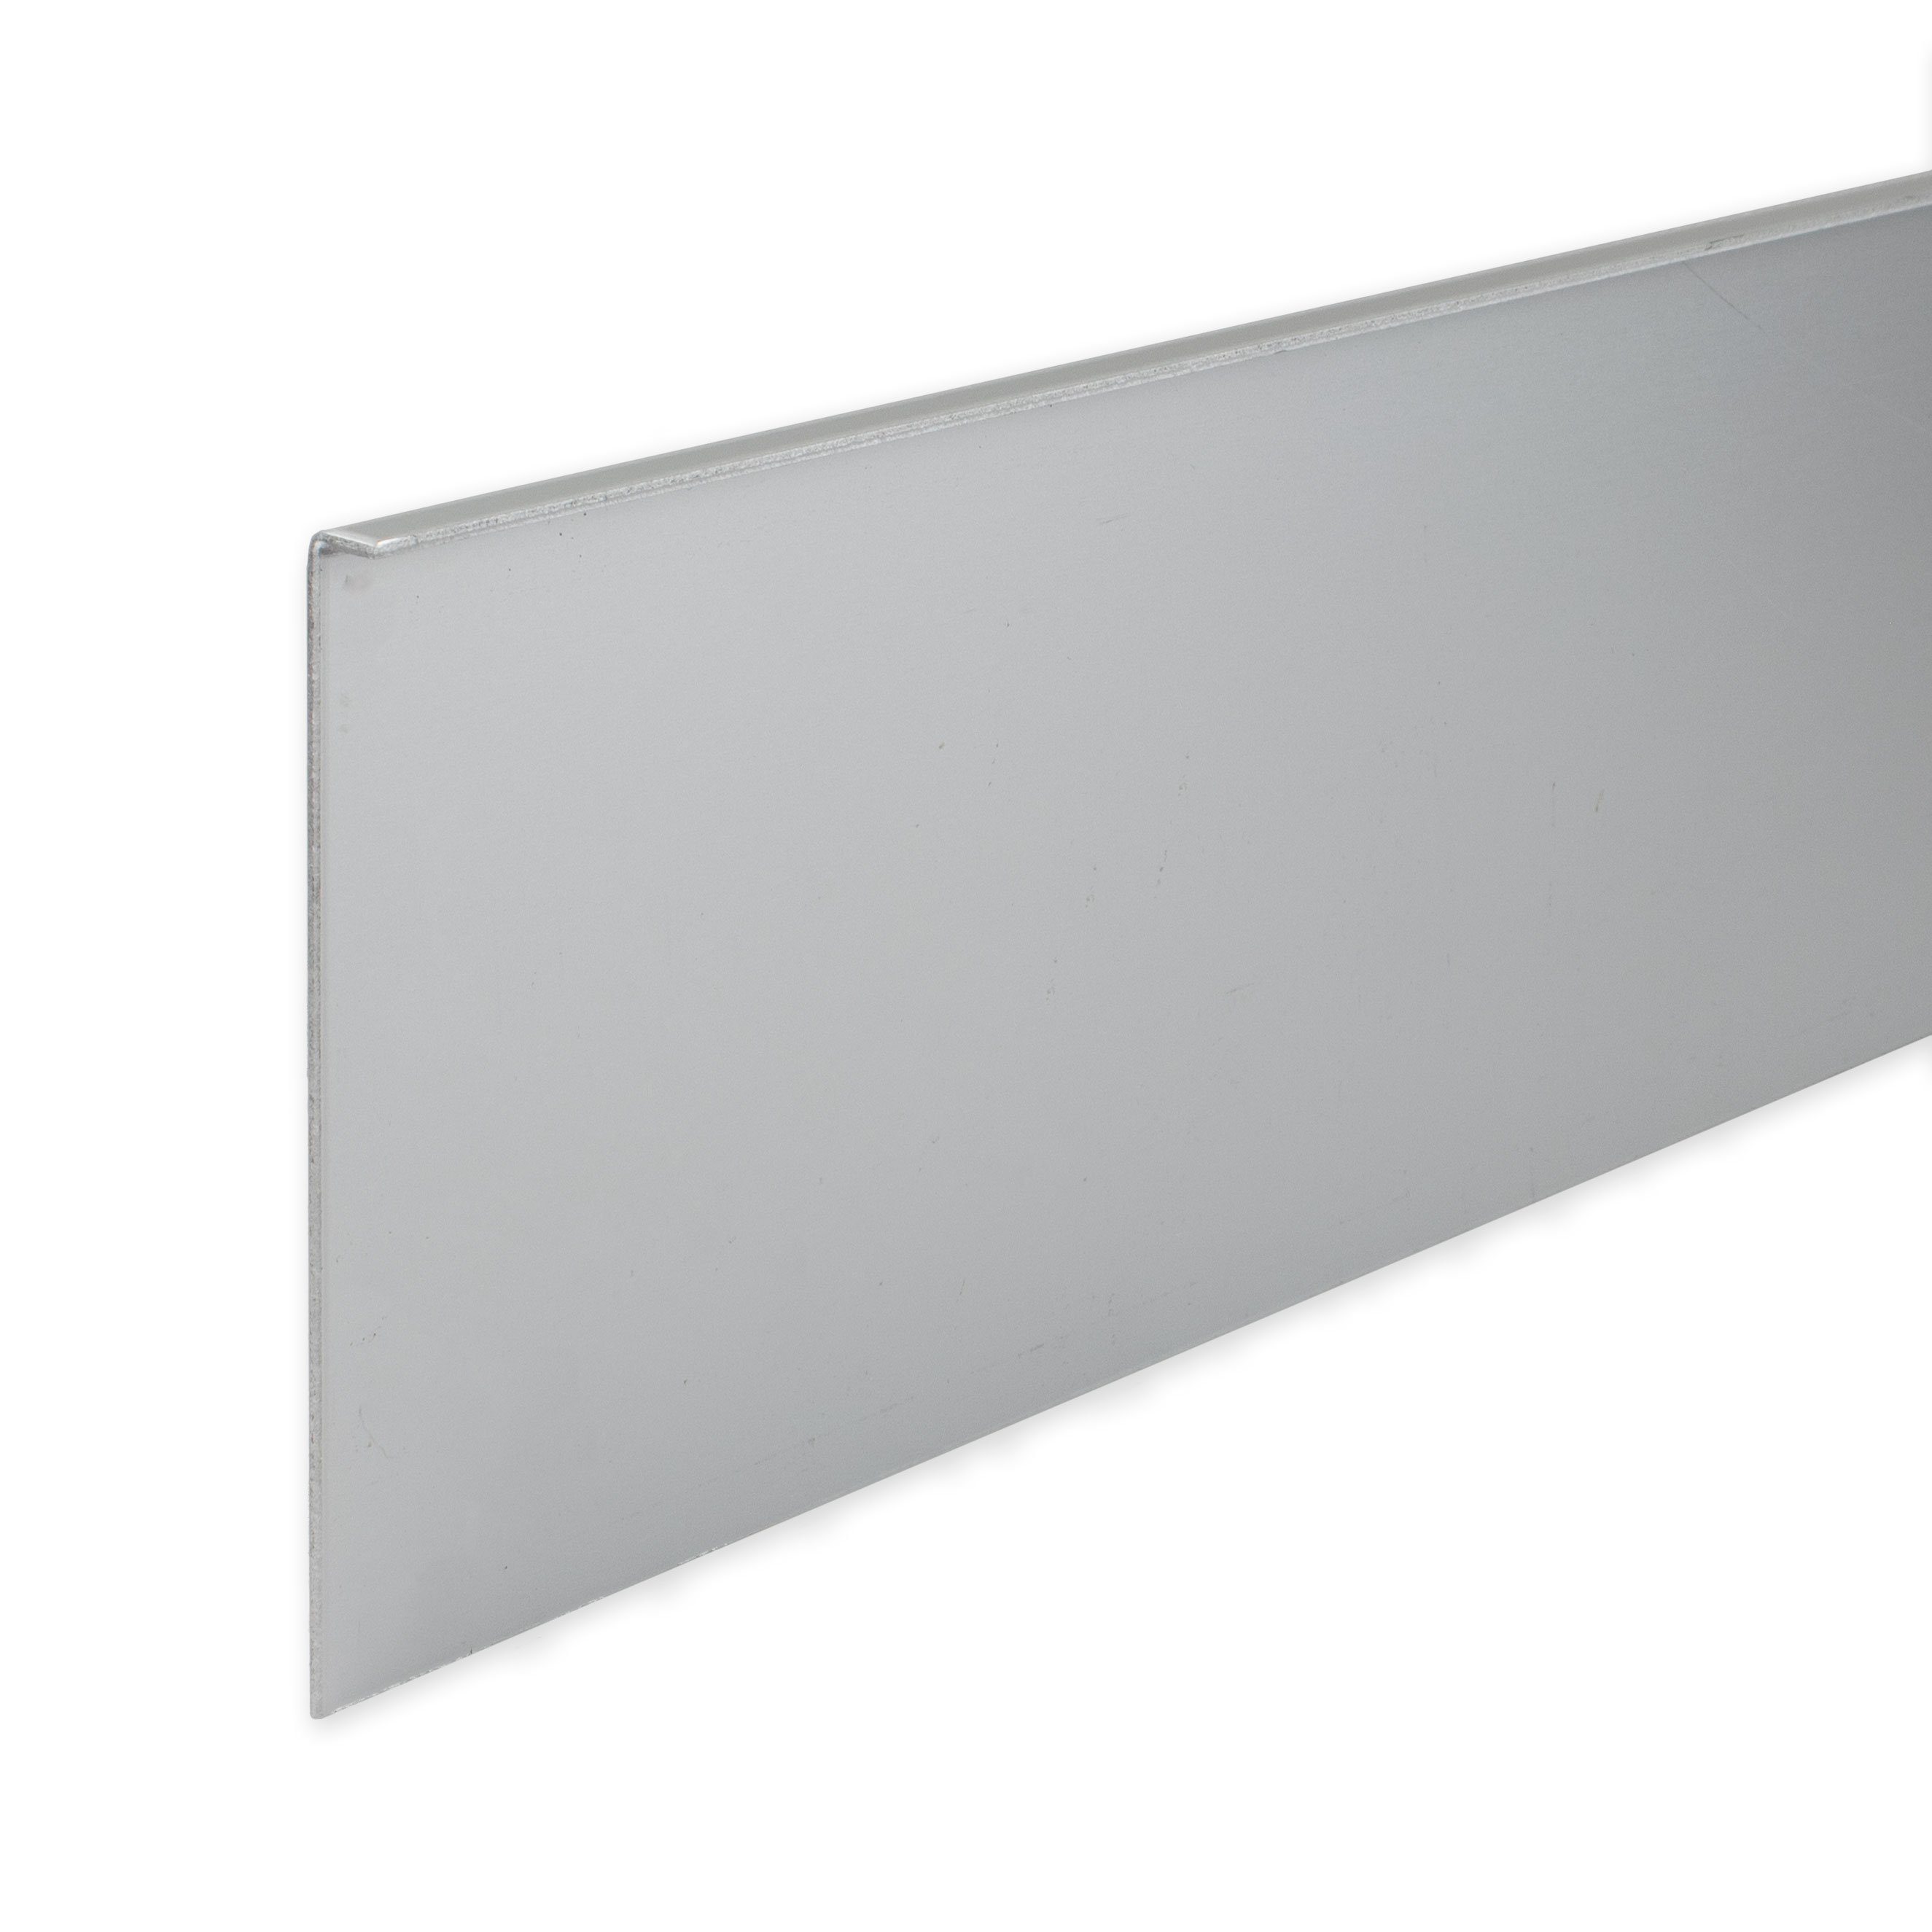 PROVISTON Sockelleiste Aluminium, 100 x 11 x 2500 mm, Silber, Metall Sockelleiste